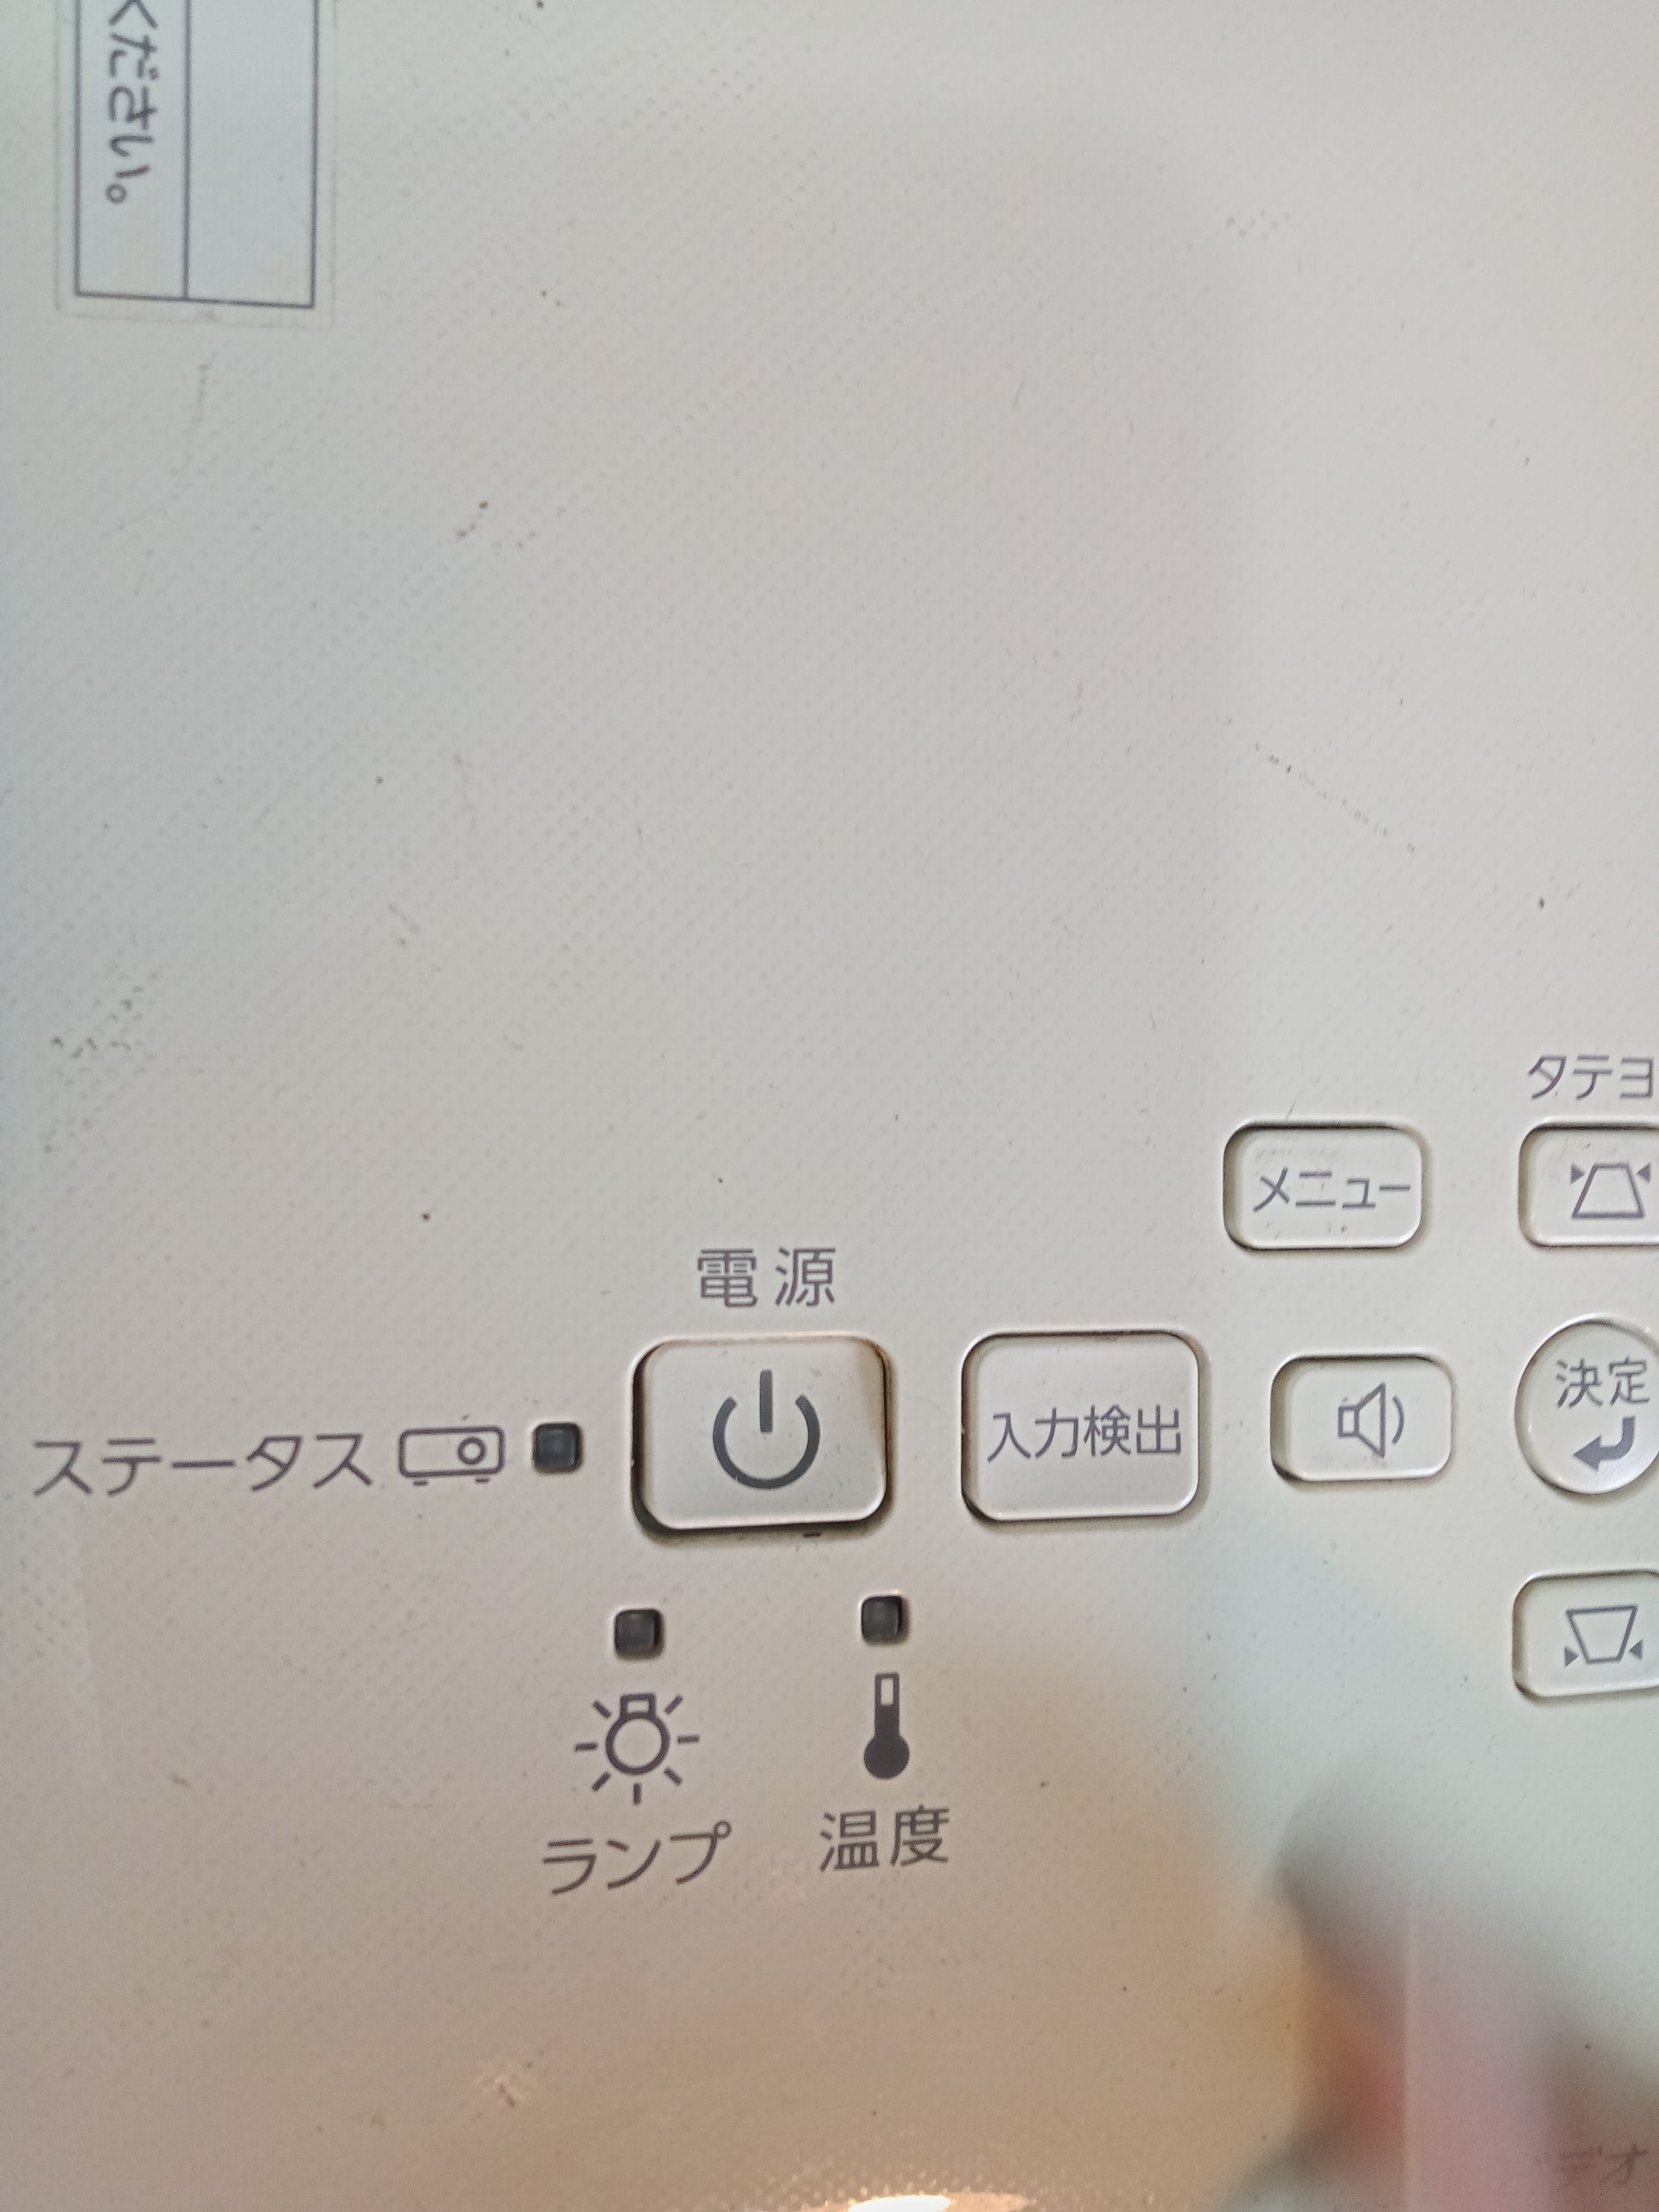 Đèn báo sáng ở máy chiếu Hitachi là lỗi gì